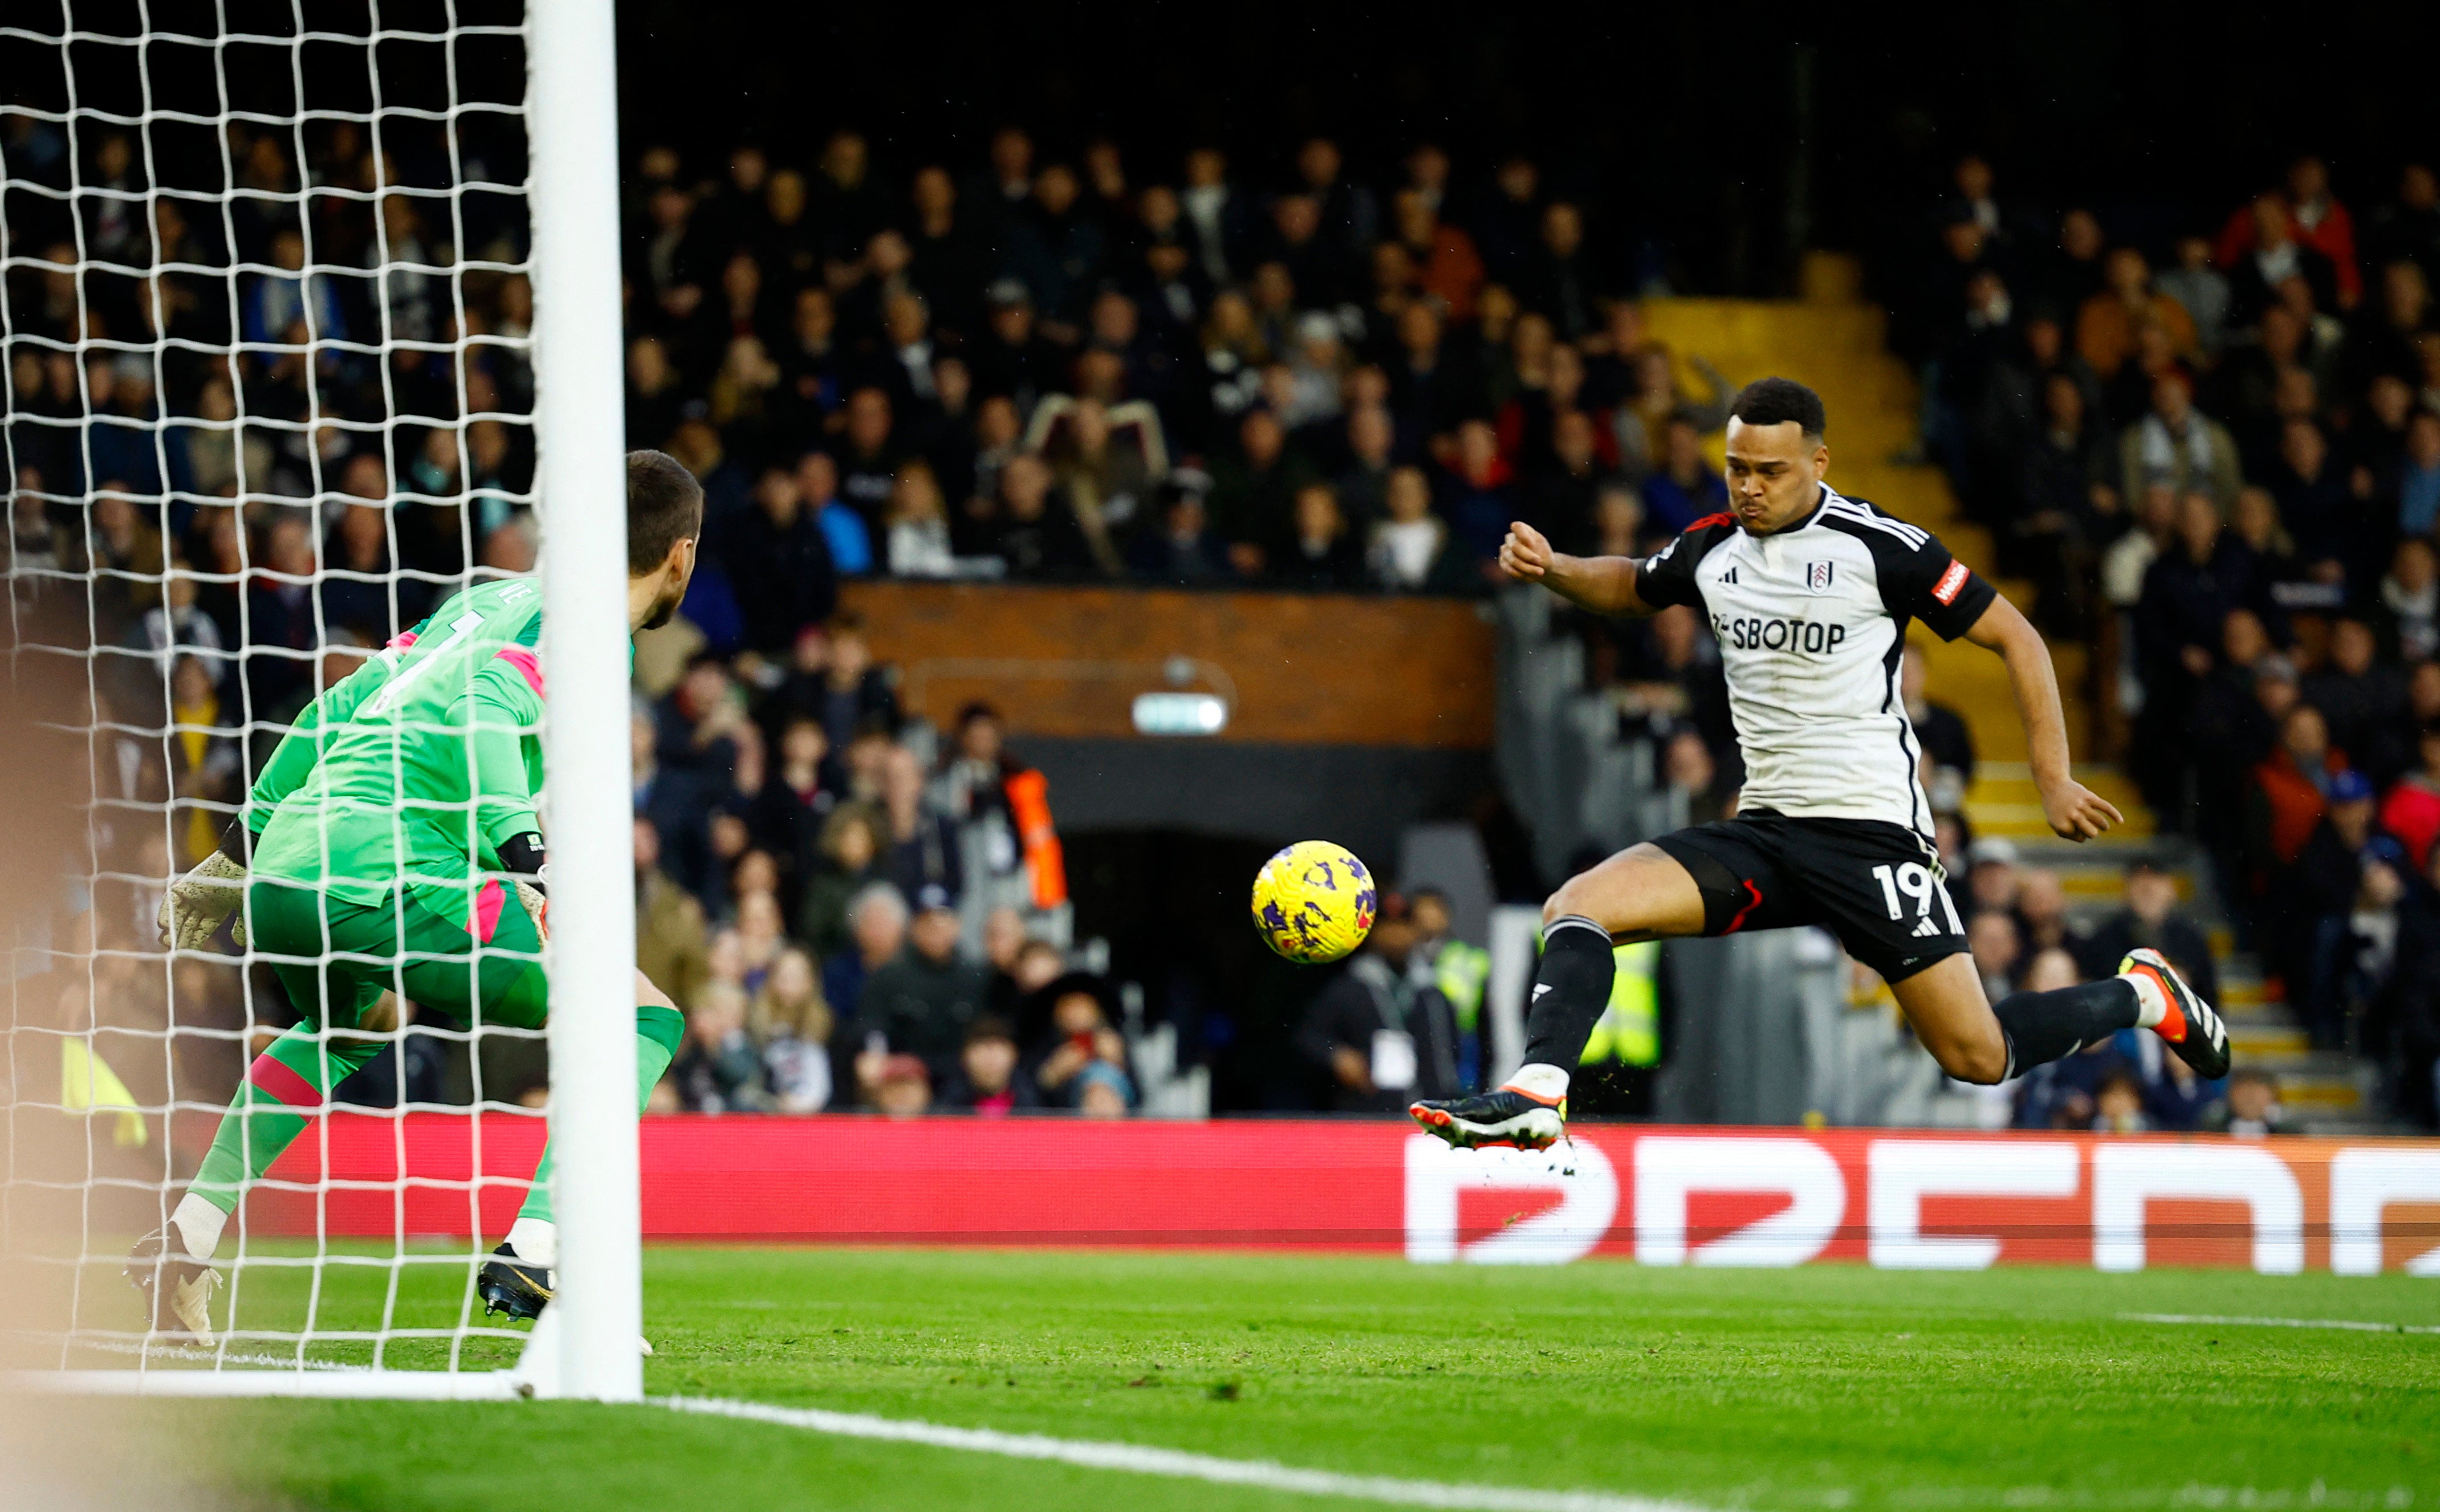 Fulham's Rodrigo Muniz scores their third goal past